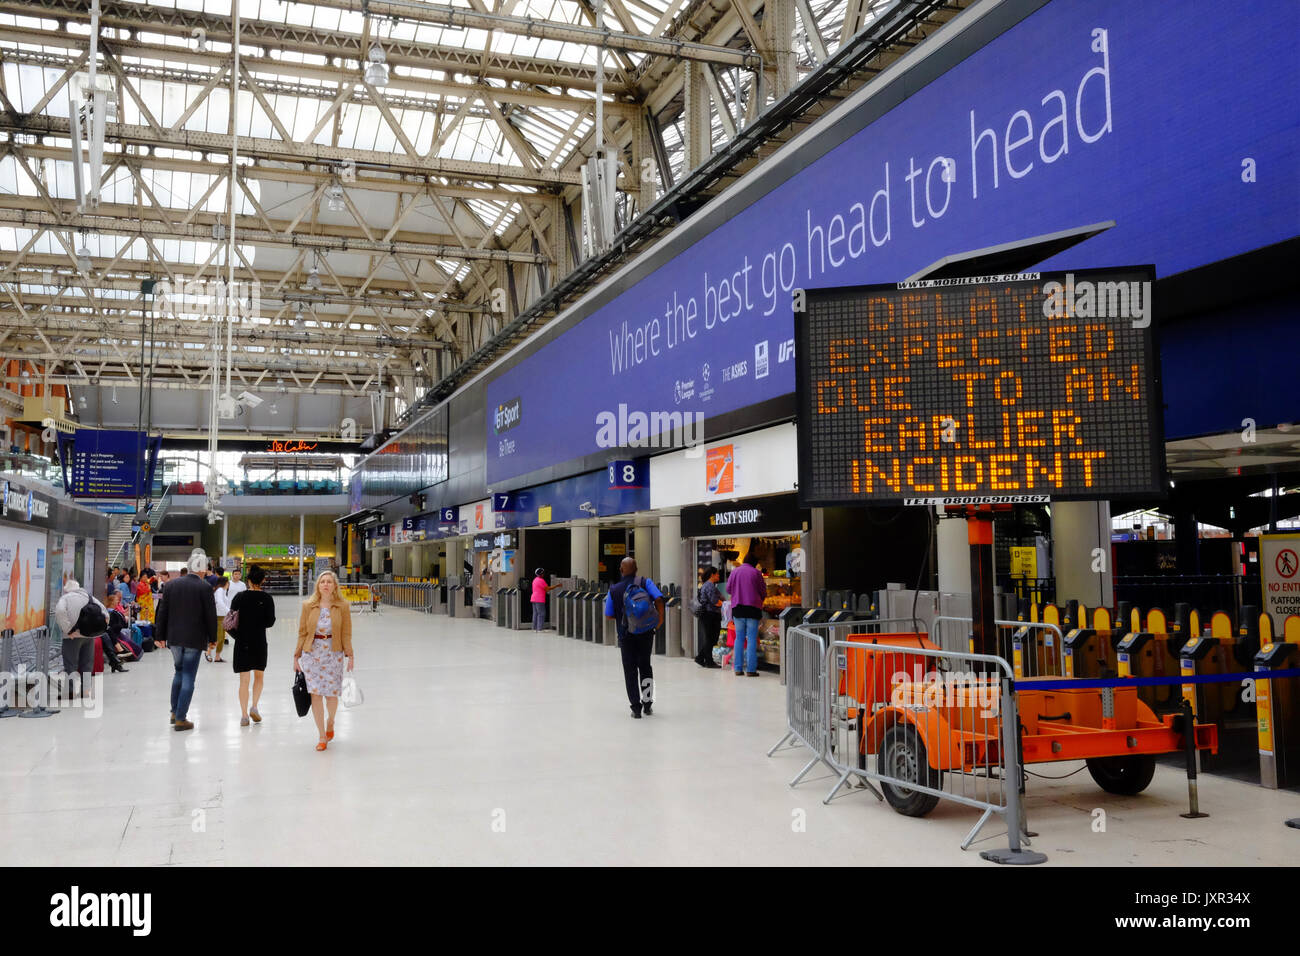 La estación de Waterloo en Londres el día un descarrilamiento agregado al caos causado por las obras de mejora que tienen plataformas cerradas. Adoptada el 16 de agosto de 2017. Foto de stock